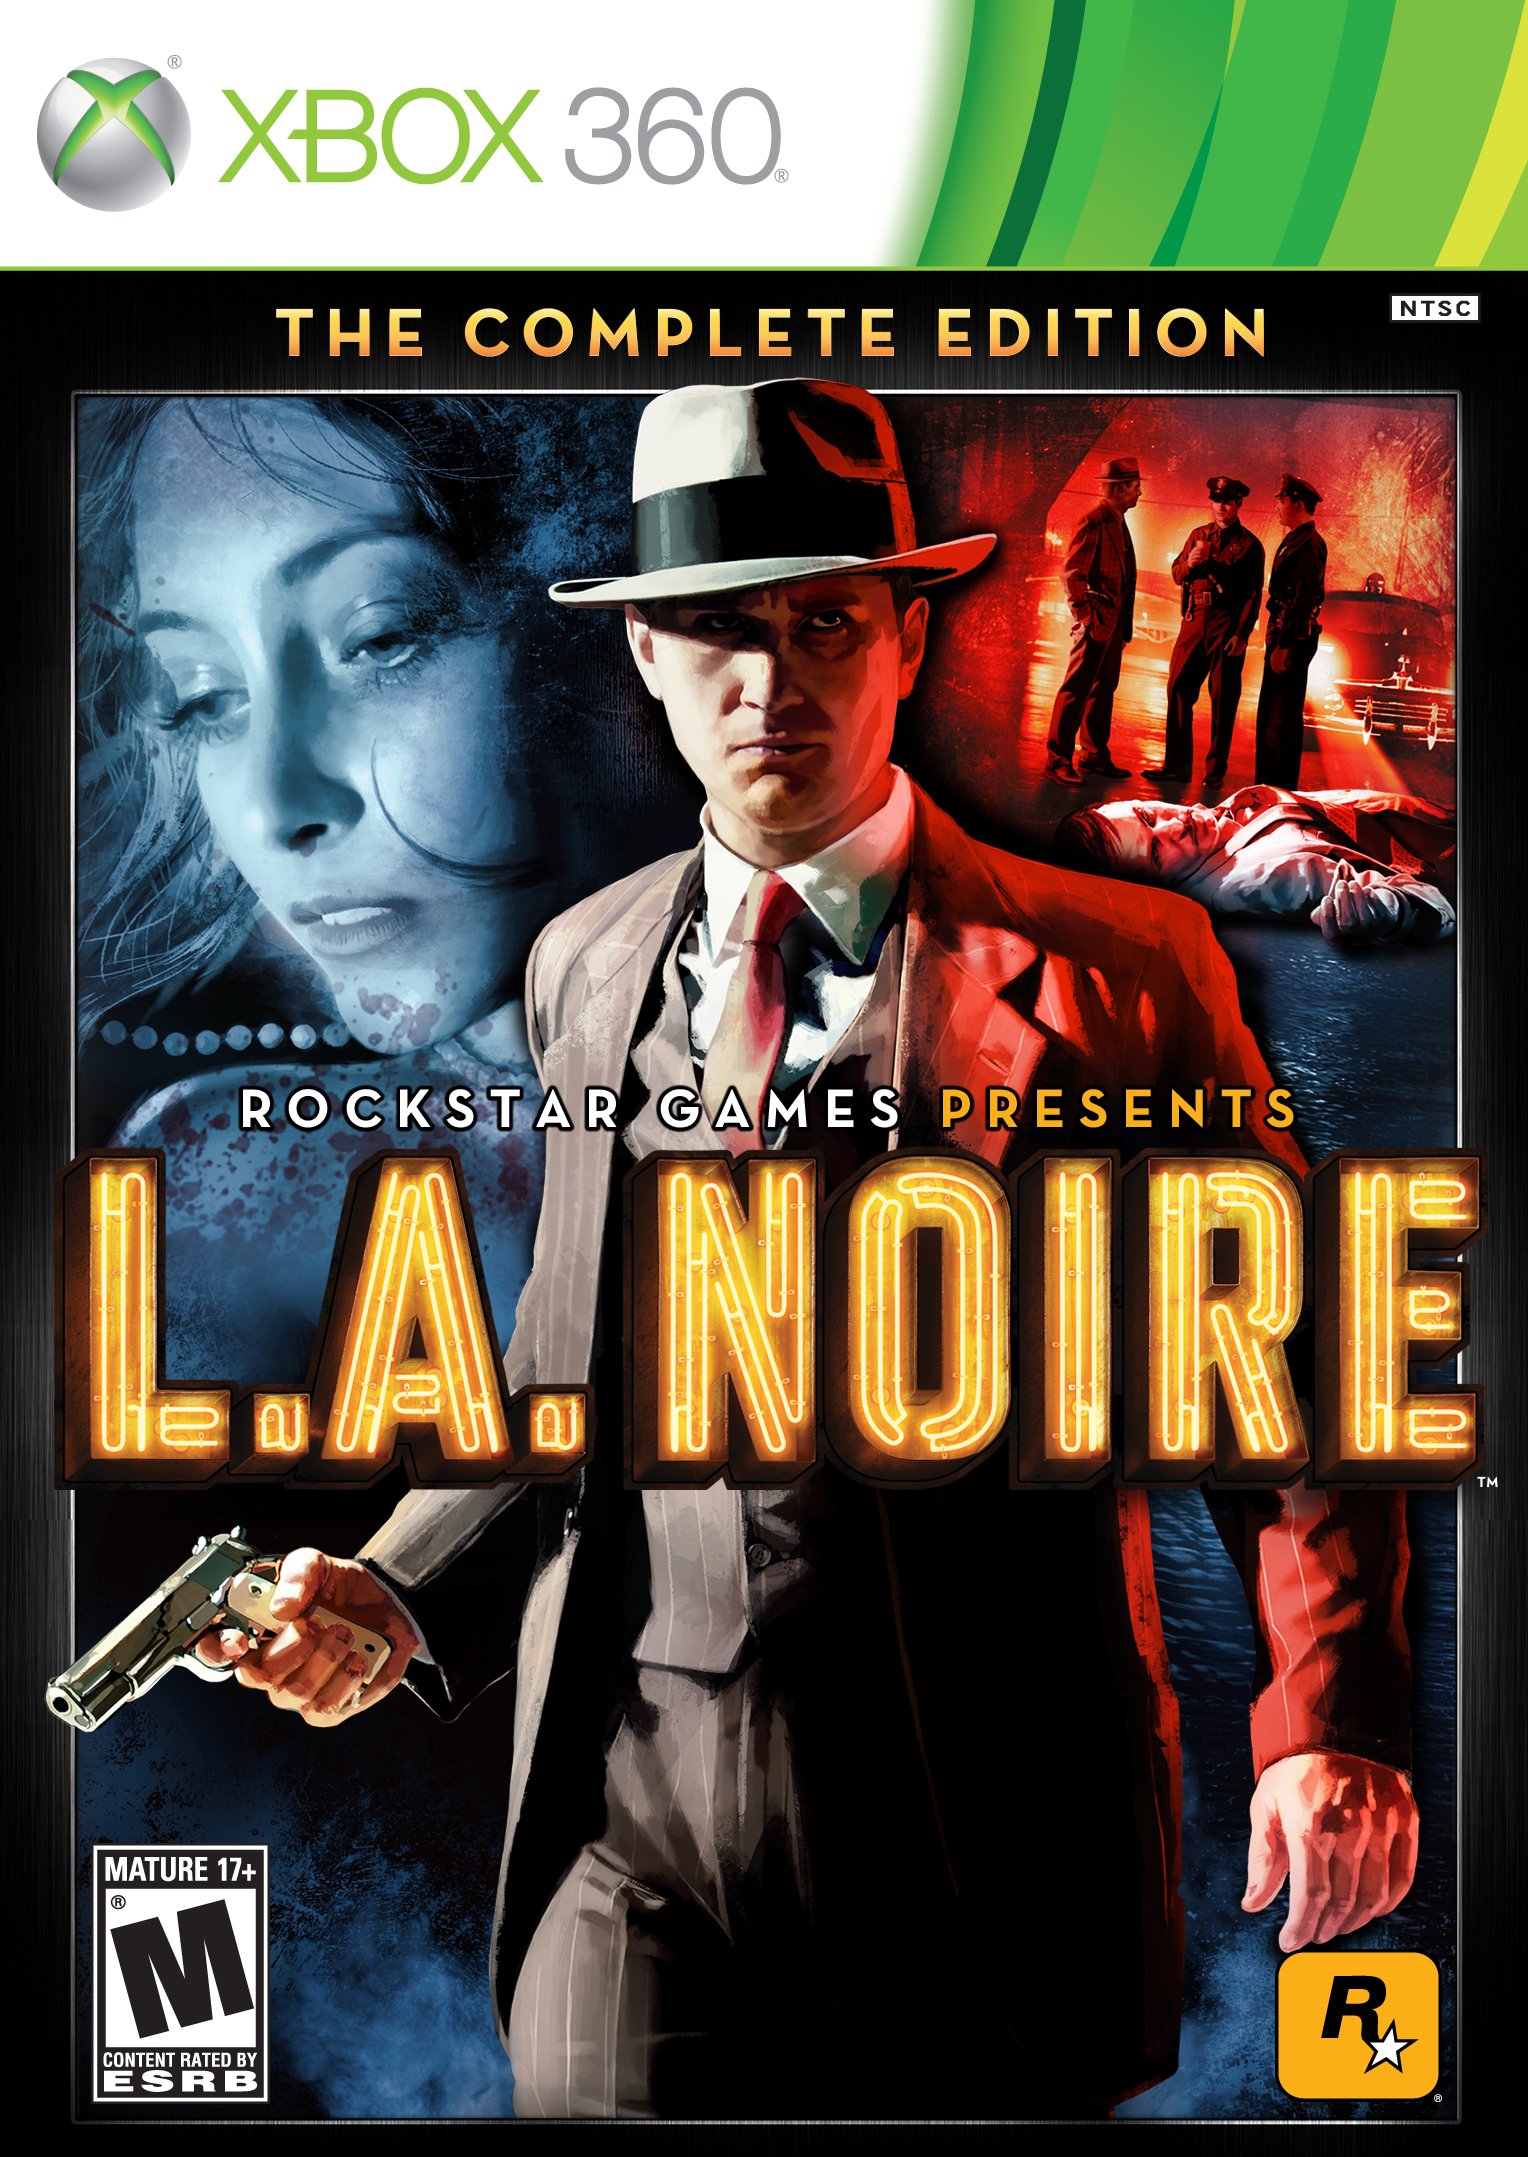 L.A. Noire: The Complete Edition - PC Review - Brash Games